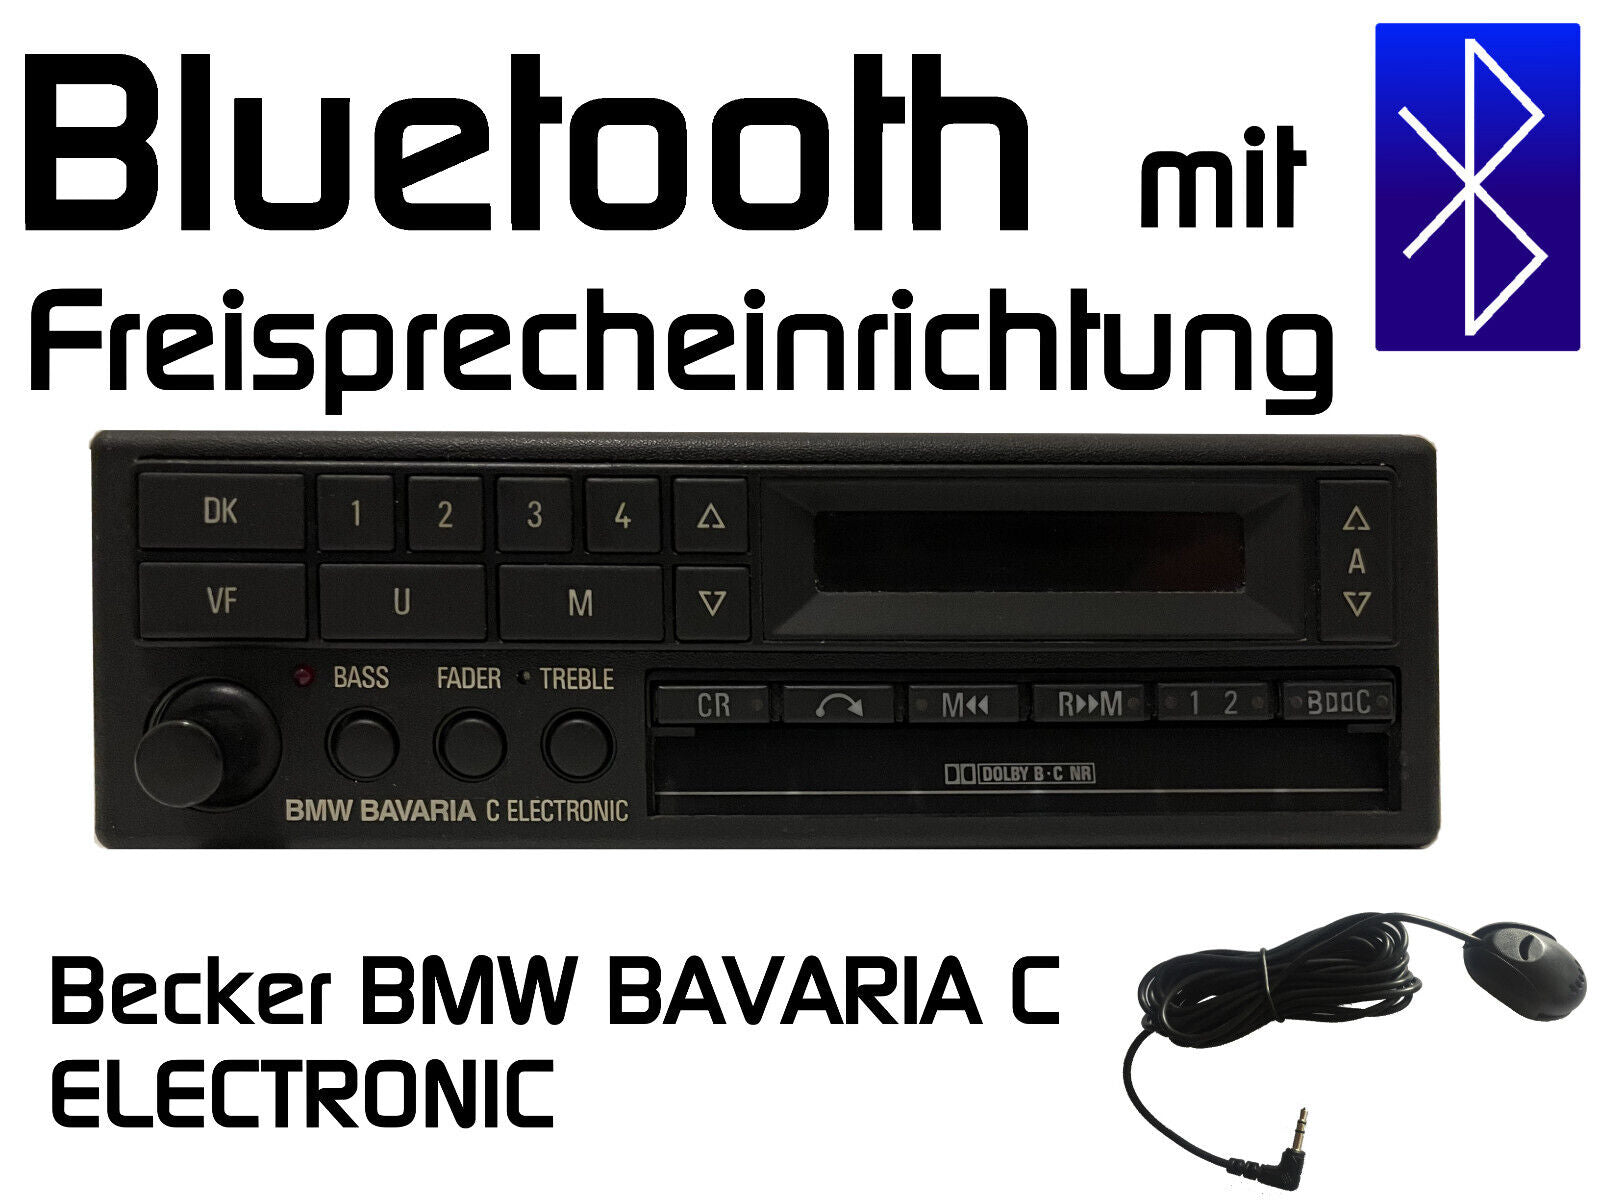 Becker BE728/729 Bluetooth mit Freisprecheinrichtung nachrüsten –  oldtimerhifi